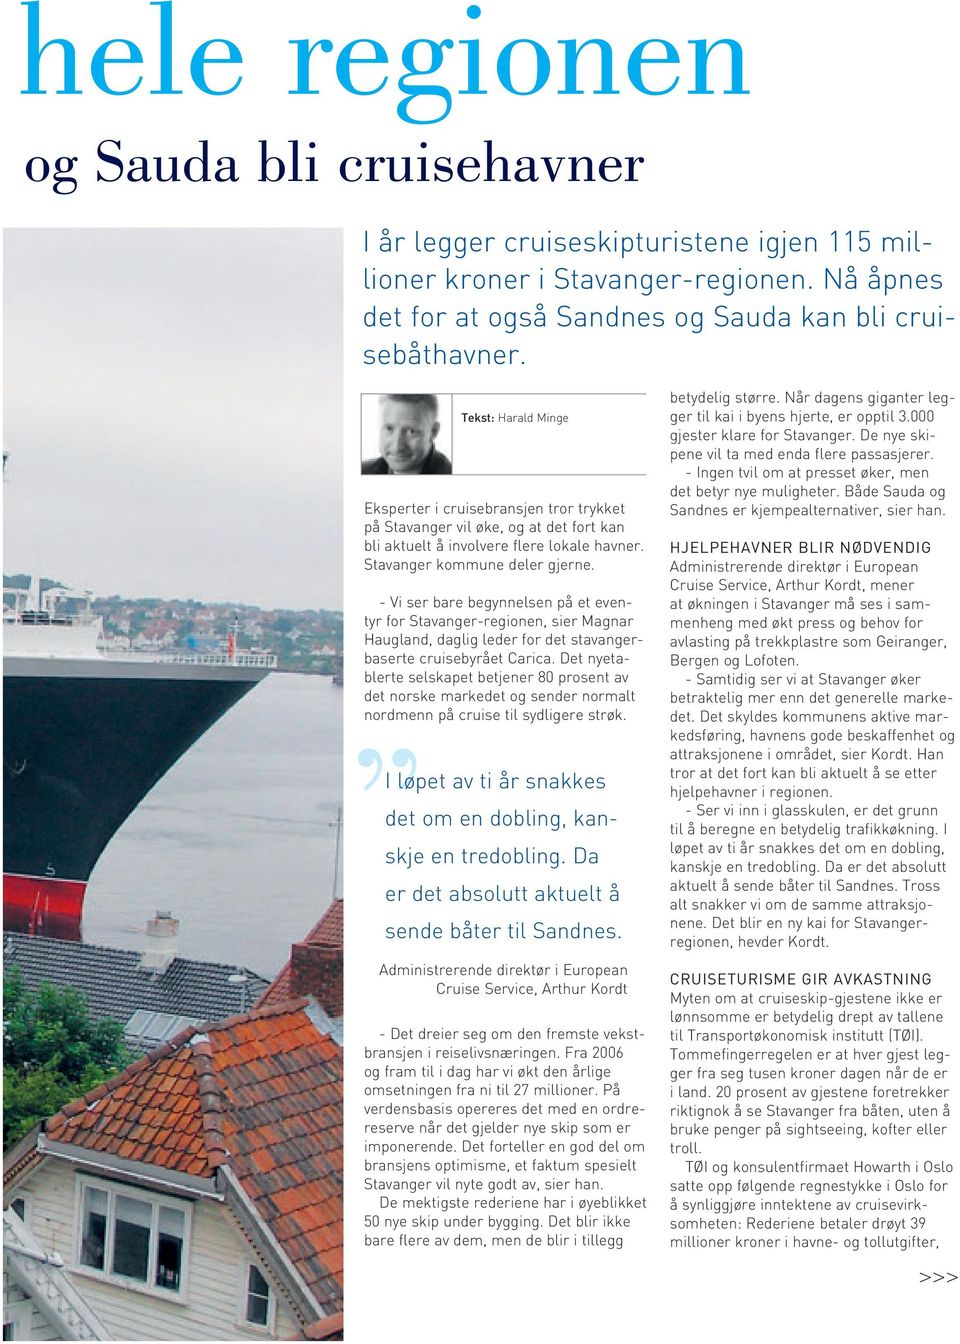 - Vi ser bare begynnelsen på et eventyr for Stavanger-regionen, sier Magnar Haugland, daglig leder for det stavangerbaserte cruisebyrået Carica.